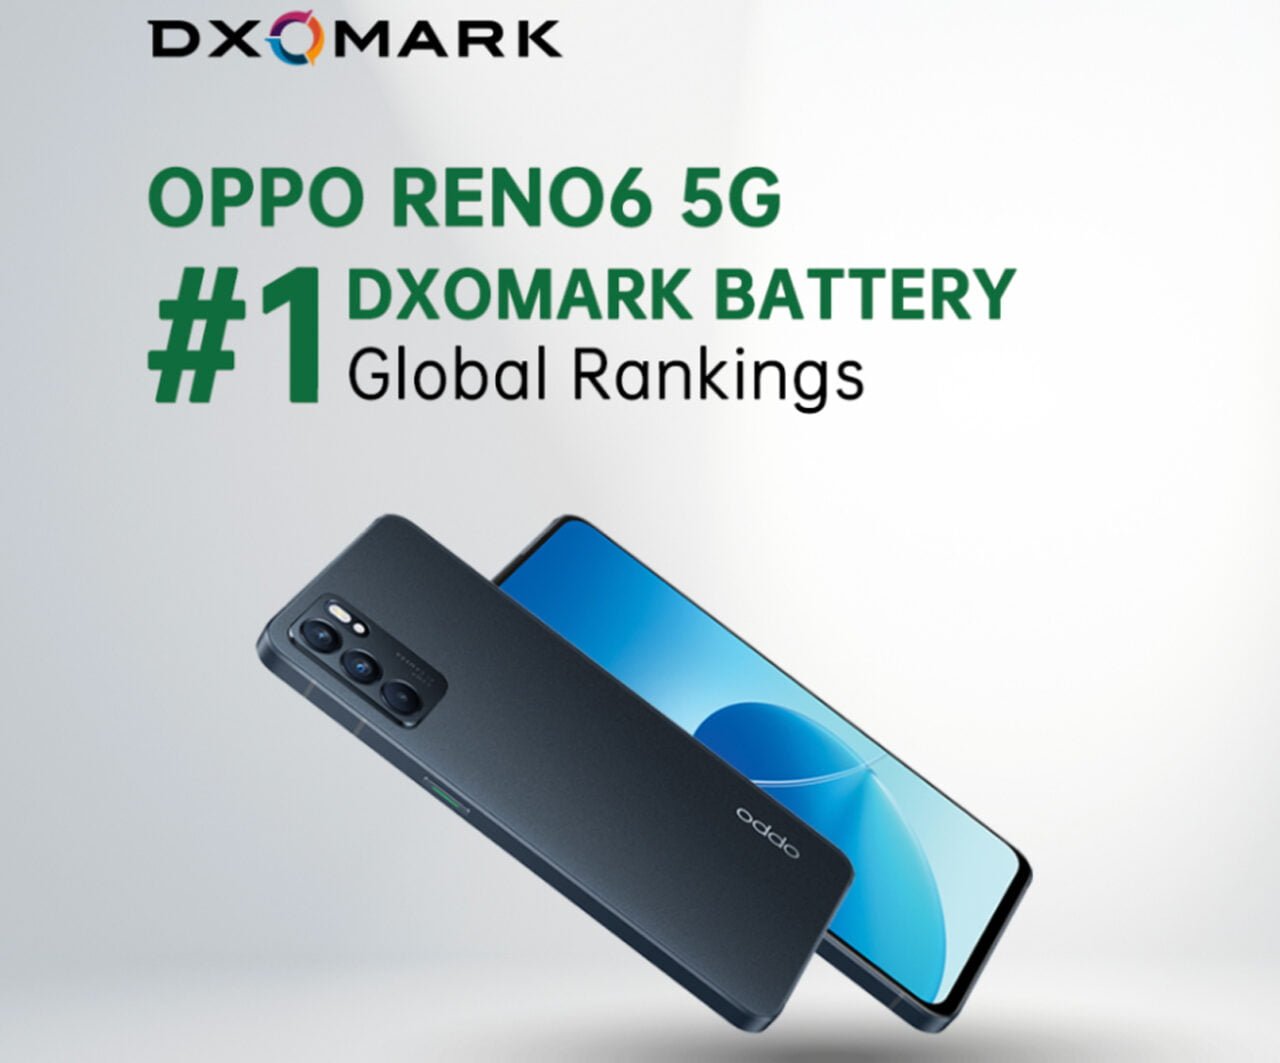 Oppo Reno6 5G DXOMARK bateria